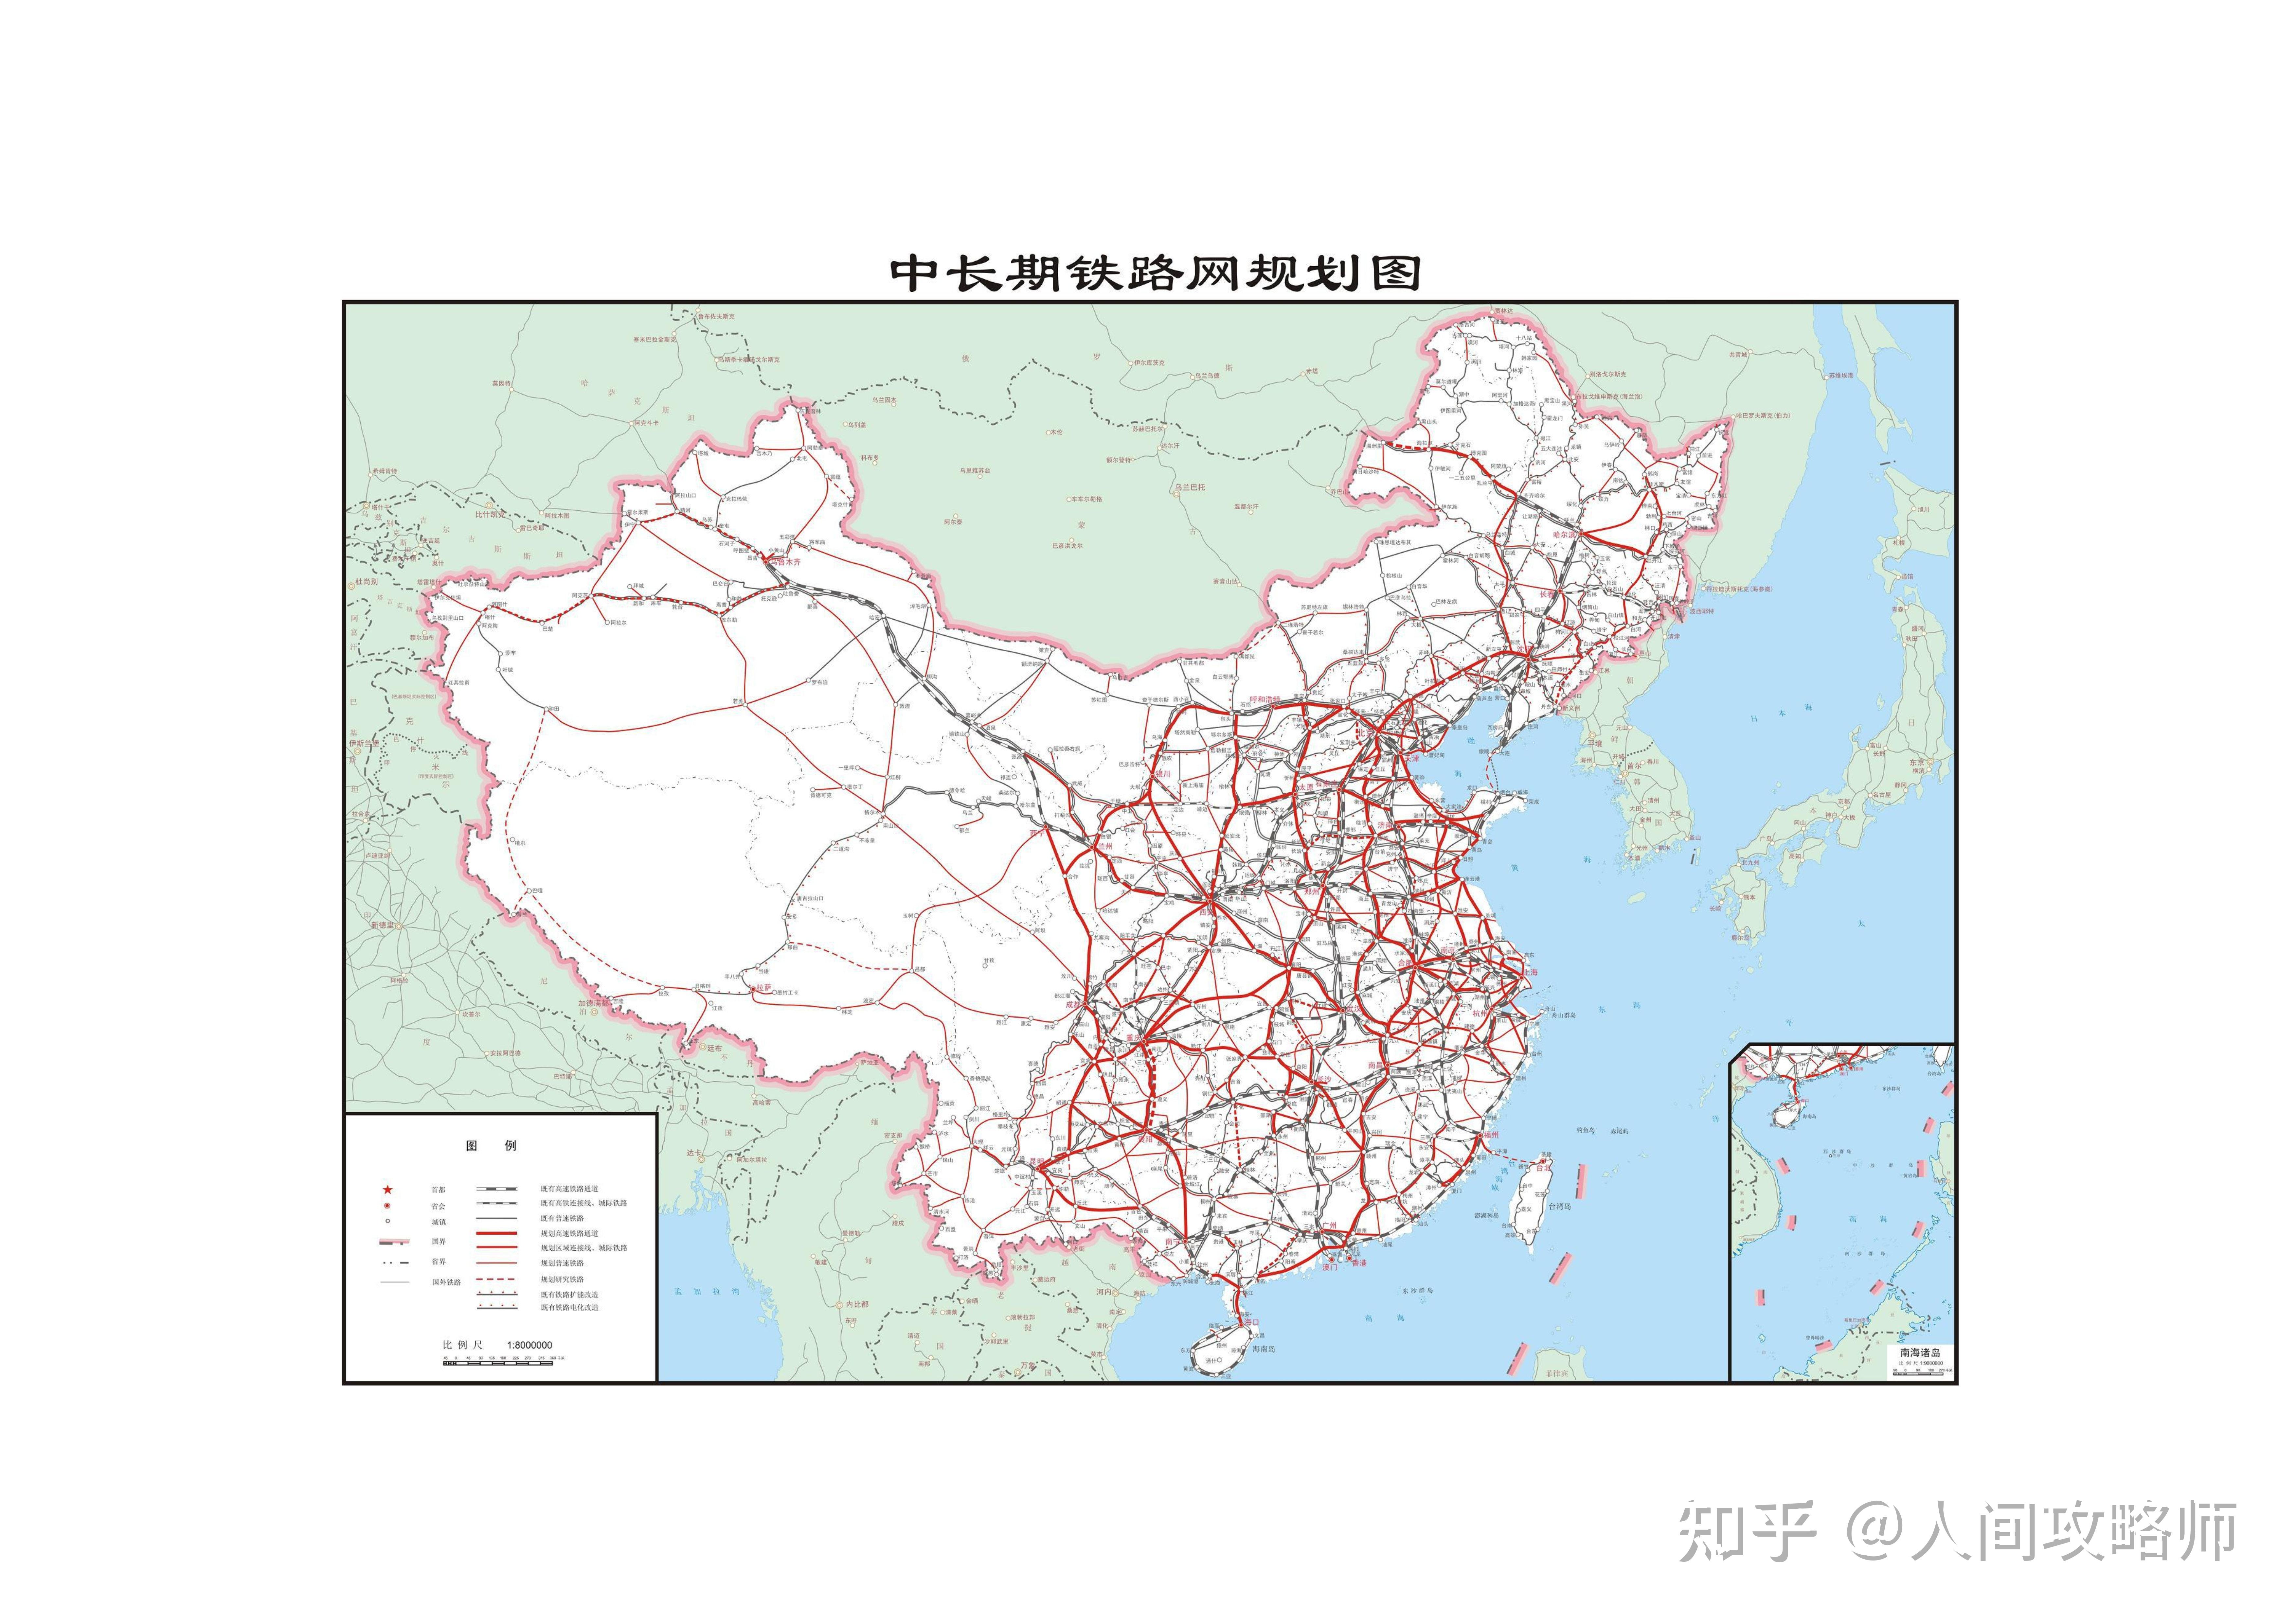 中长期铁路网规划(规划期为 2016